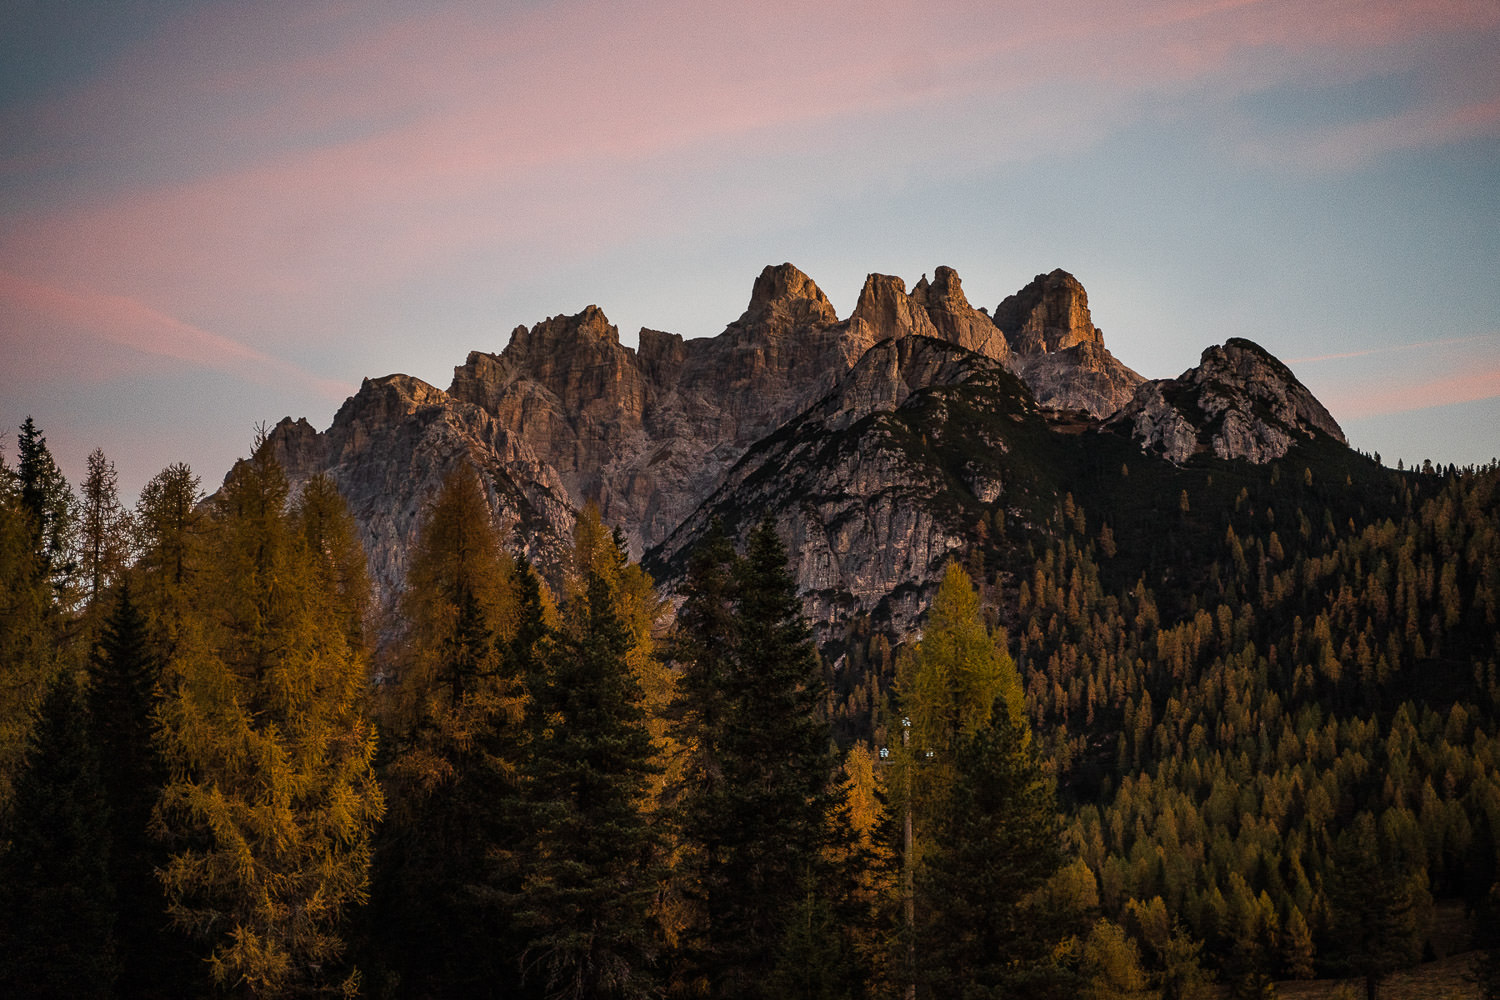 Sonnenaufgang in den Dolomiten